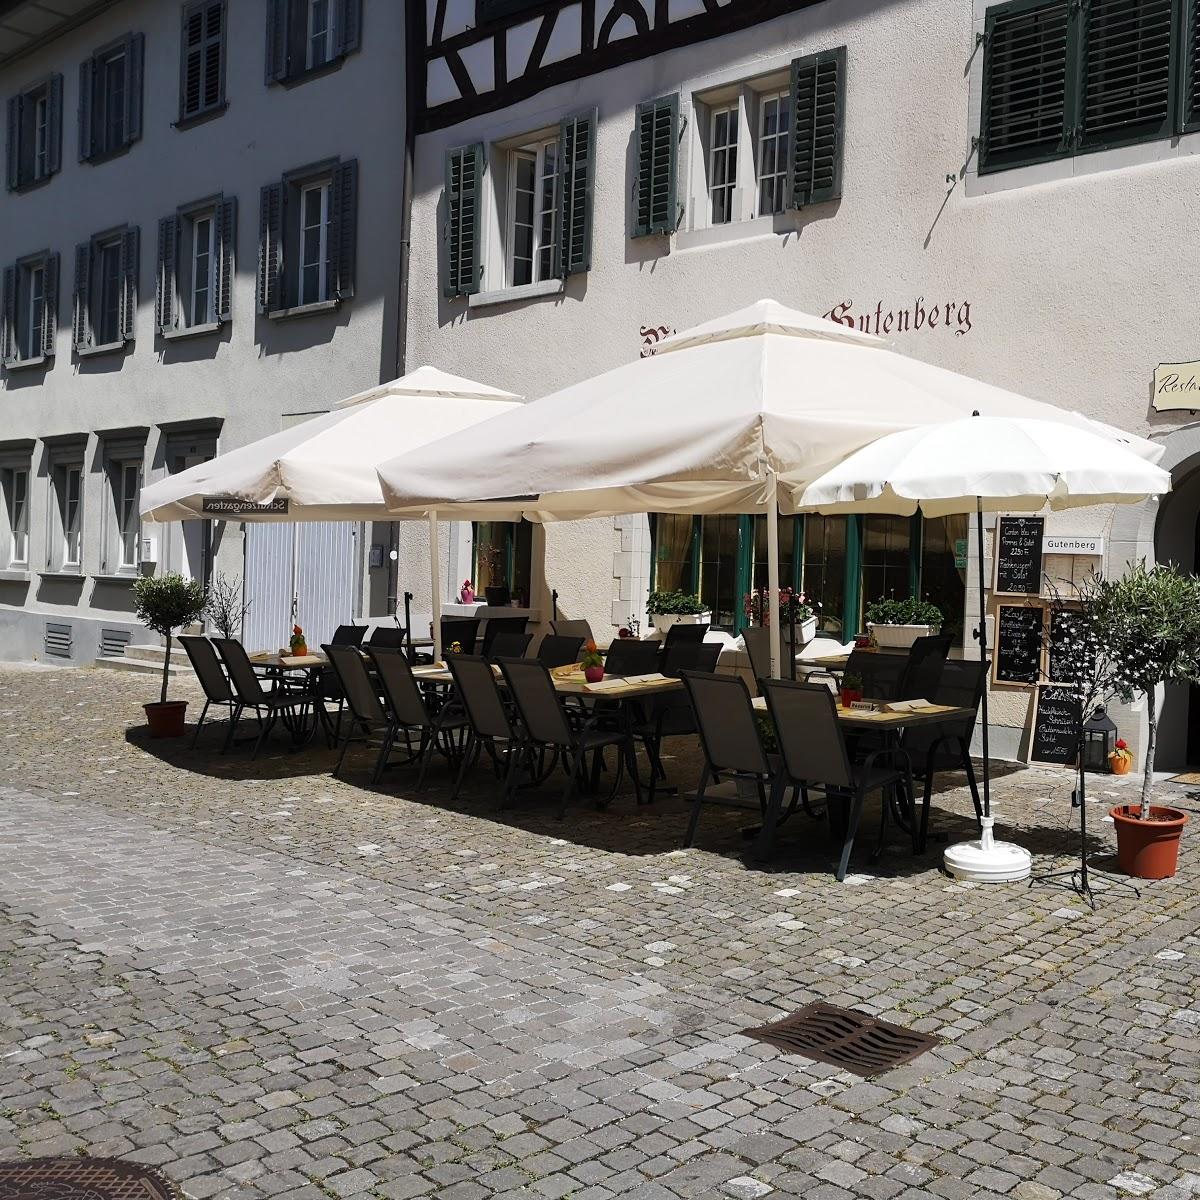 Restaurant "Restaurant Gutenberg" in Stein am Rhein